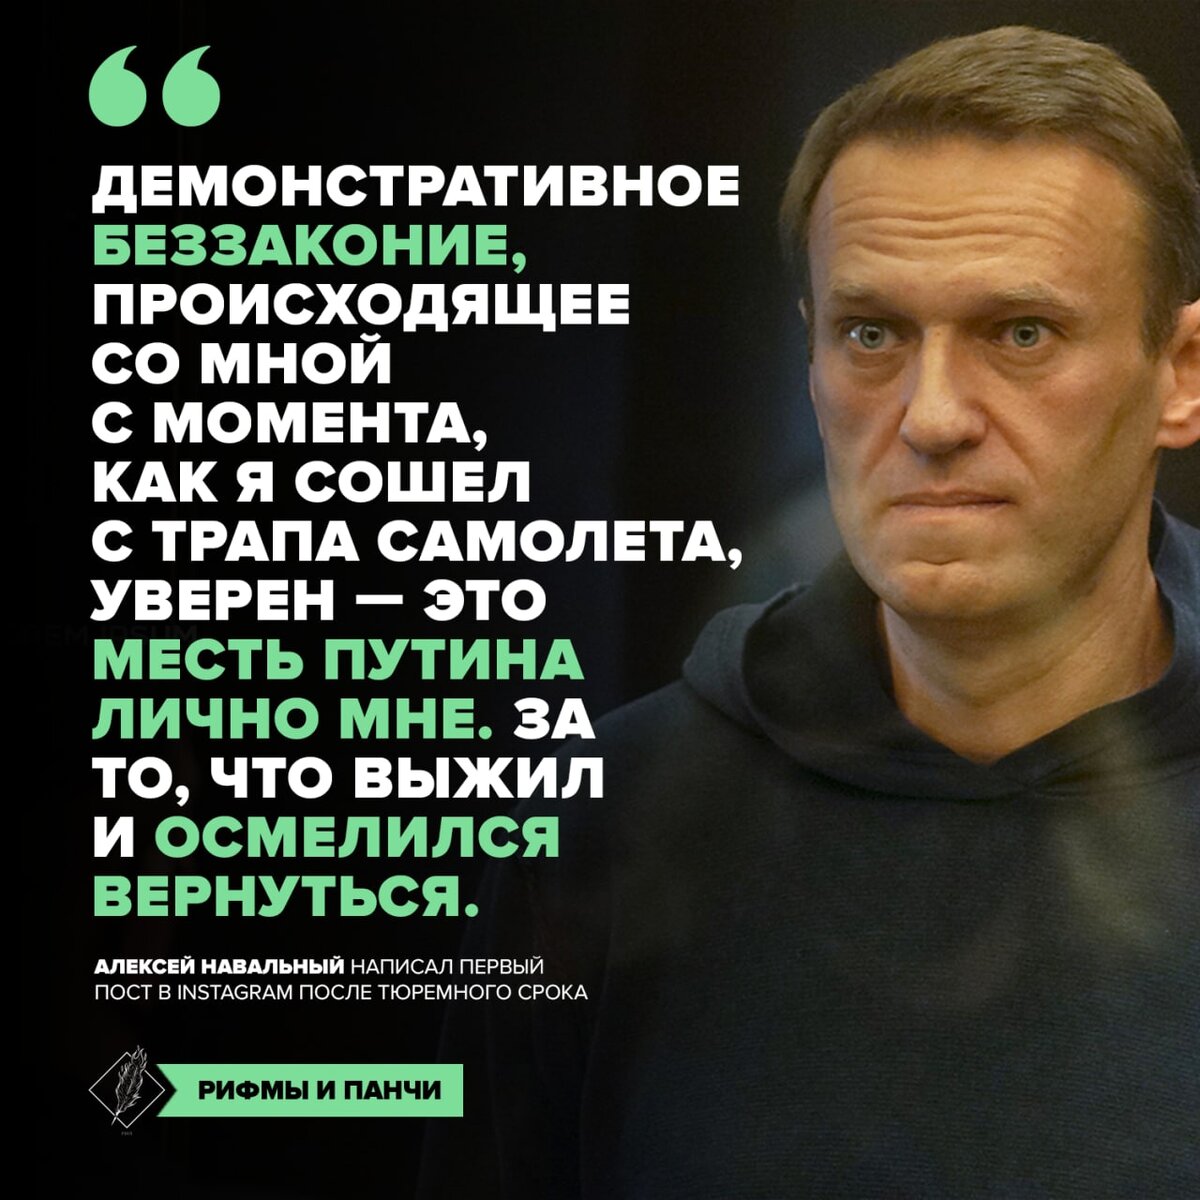 Что сделал Навальный для России. Что хорошего сделал навальный для россии